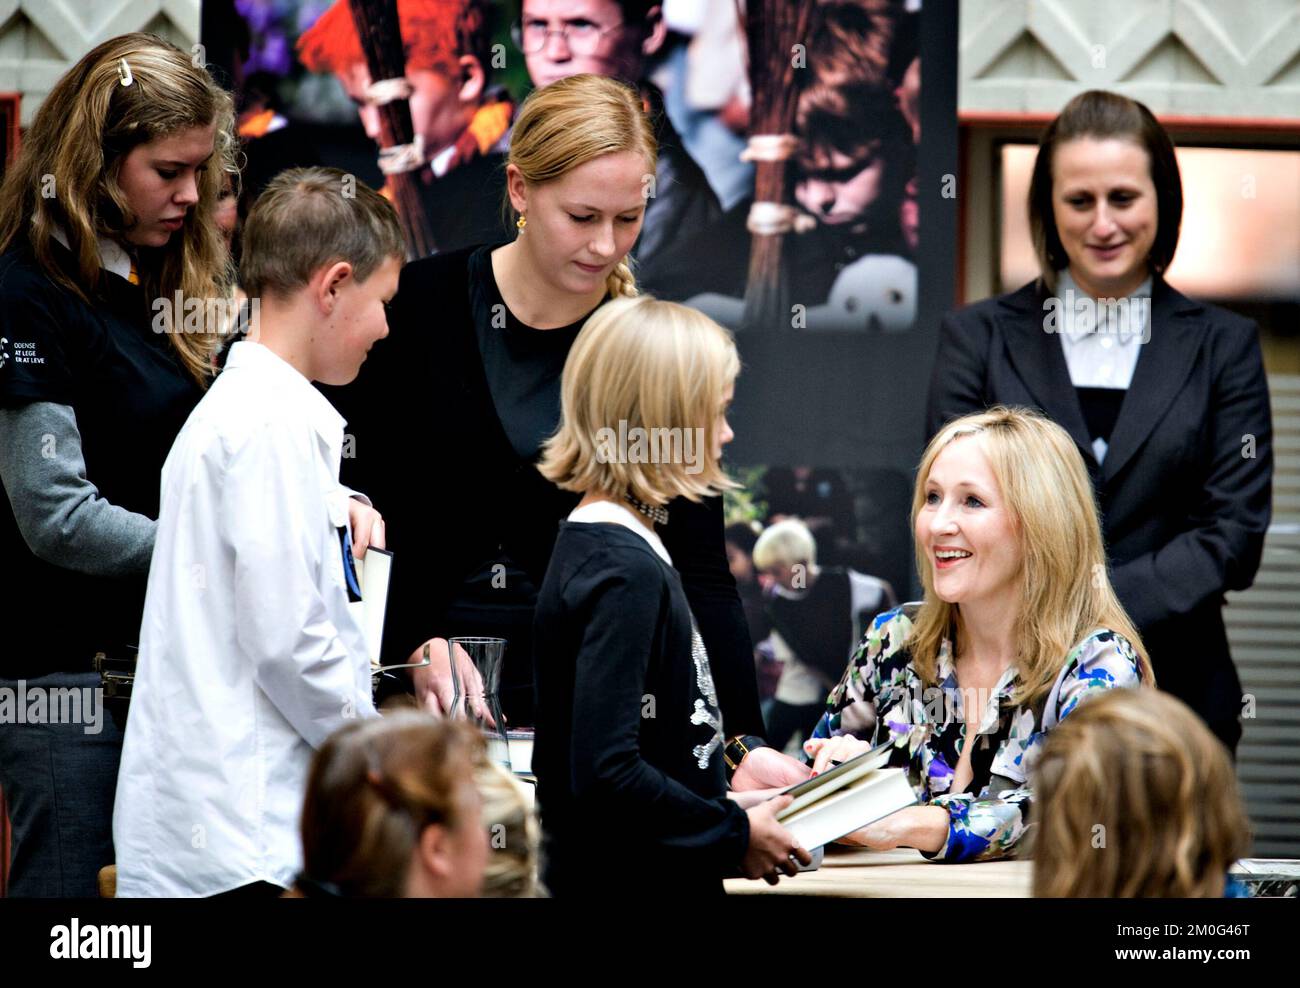 L'écrivain britannique J. K. Rowling reçoit aujourd'hui mardi 19 octobre le prix de littérature Hans Christian Andersen à Odense. Le prix est fondé par le Conseil consultatif de la HCA et J. K. Rowling est le premier auteur à recevoir cet honneur. Beaucoup de fans de Harry Potter sont venus pour célébrer leur auteur préféré ath la cérémonie de prix. Banque D'Images